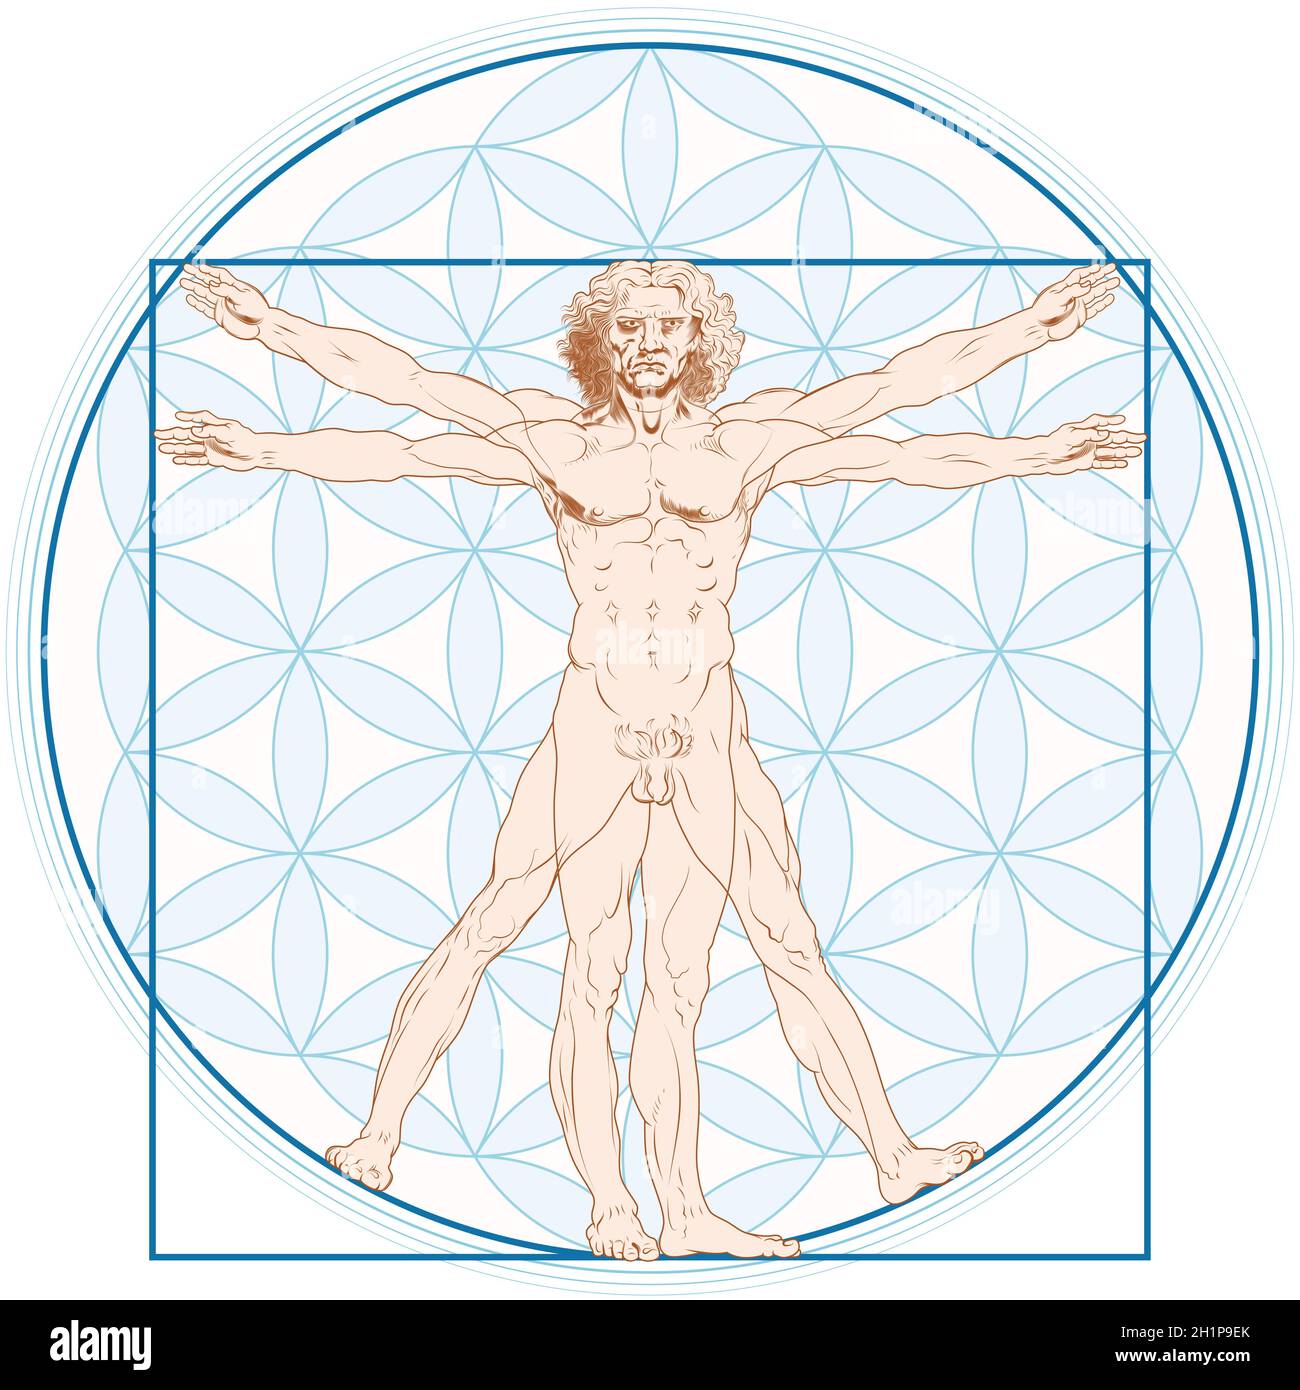 Vektor-Design von Vitruvian man von Leonardo da Vinci mit Blume des Lebens Hintergrund Stock Vektor